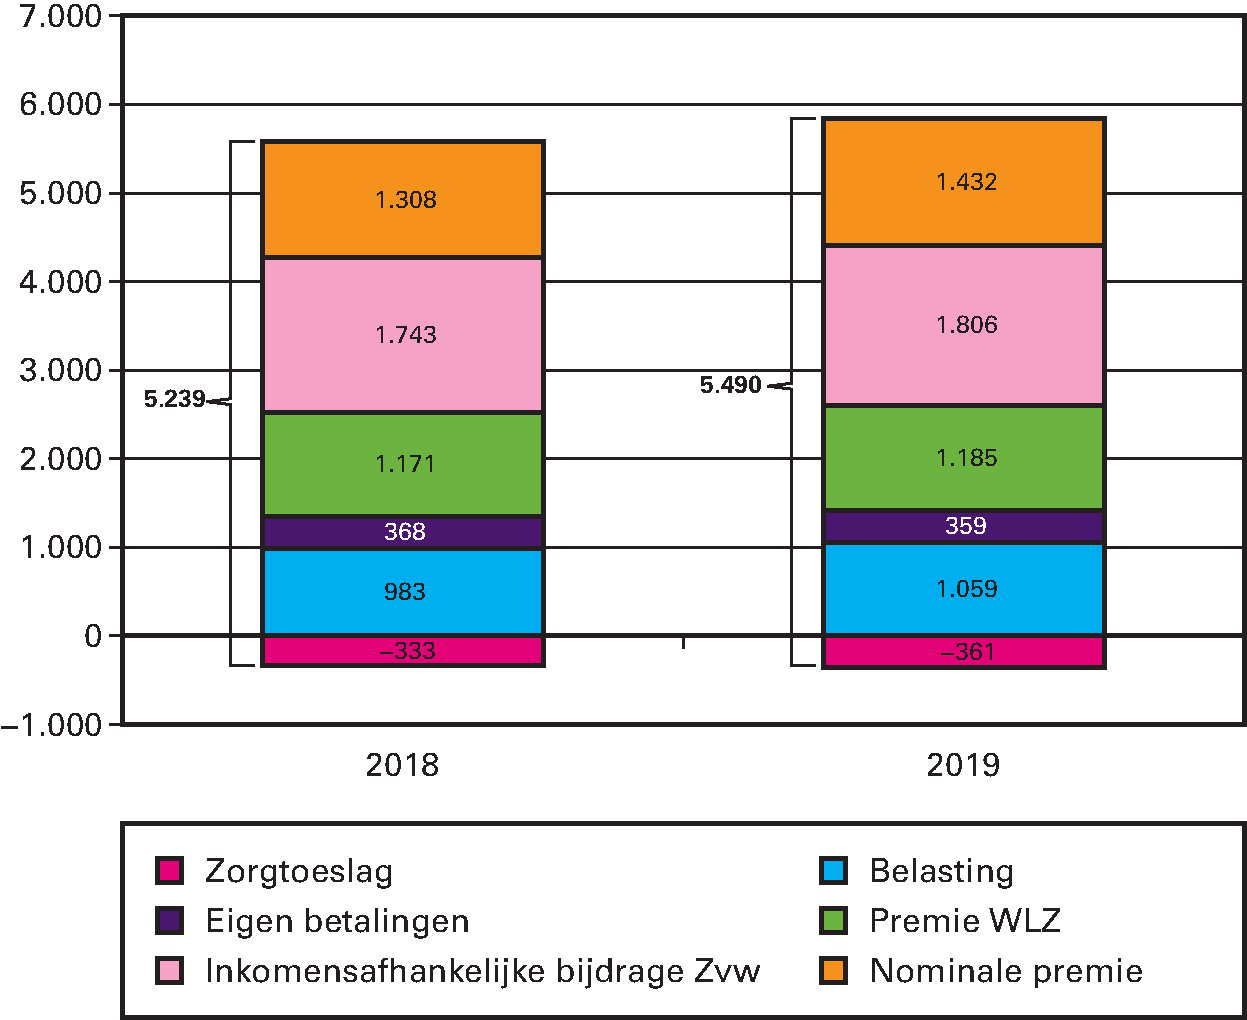 Figuur 6: Lasten per volwassene aan zorg in 2018 en 2019 (in euro’s per jaar)